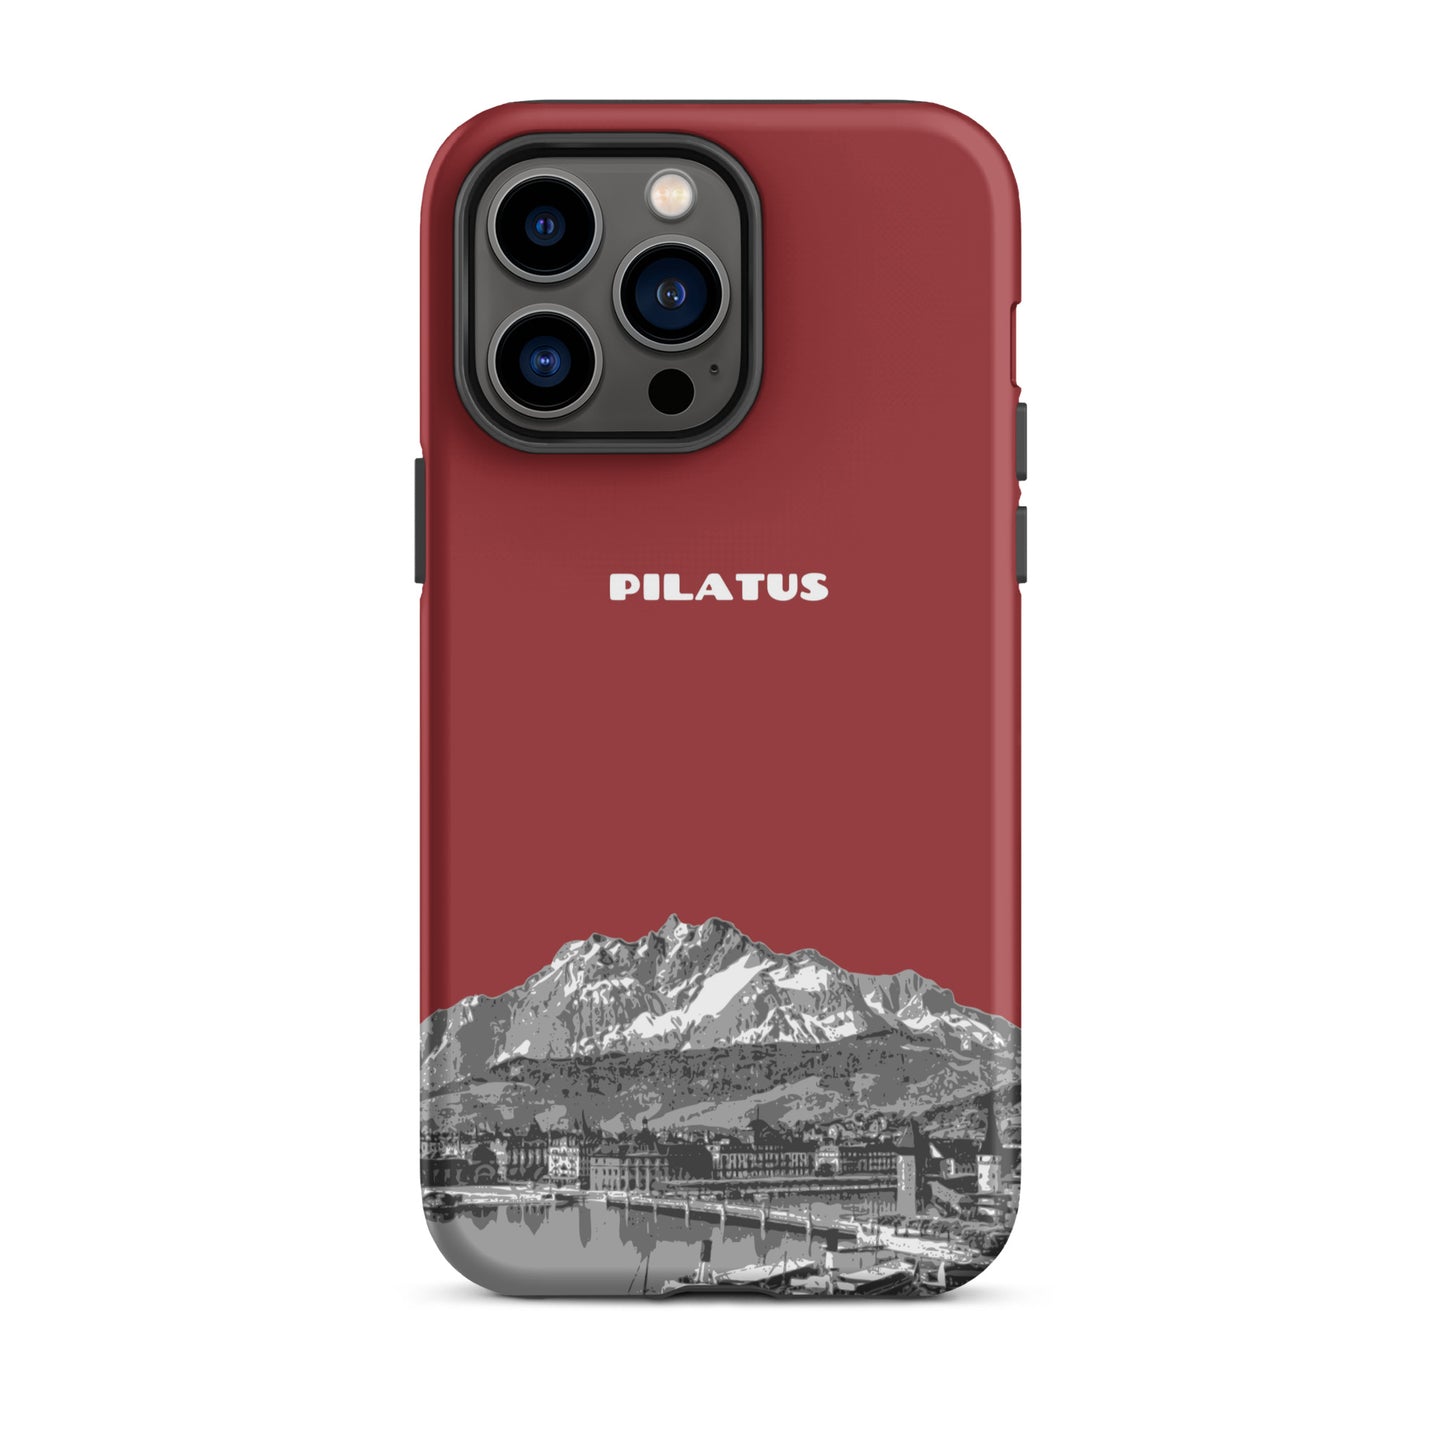 iPhone Case - Pilatus - Rot